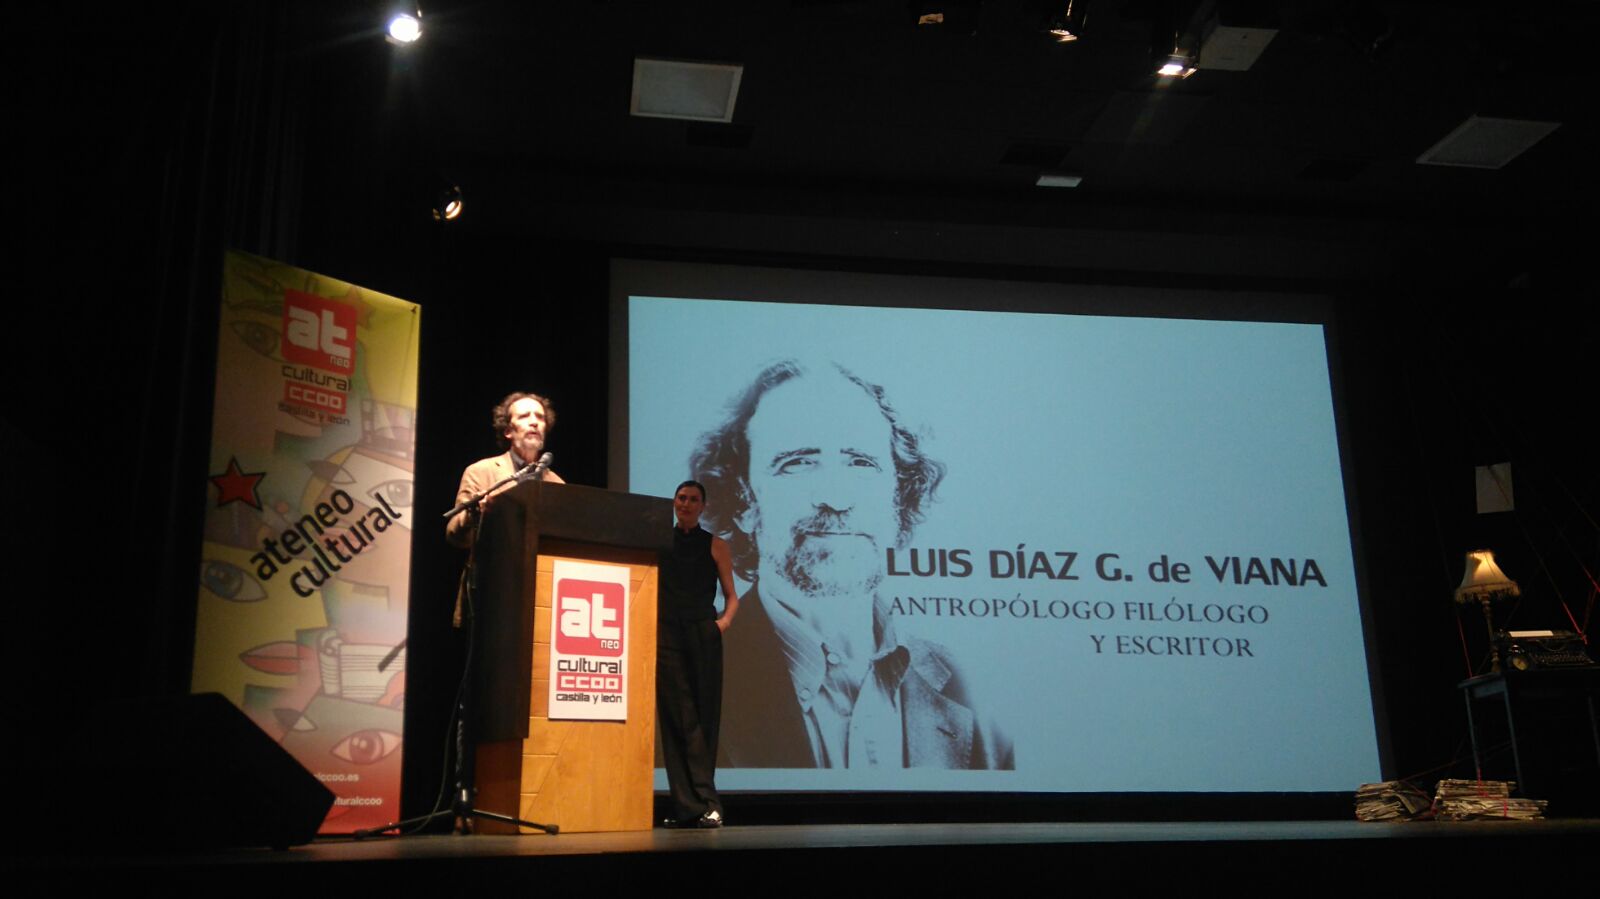 Luis Díaz G. de Viana (ILLA) recoge el "Premio Diálogo 2016" de la Fundación Ateneo Cultural `Jesús Pereda´ de Castilla y León